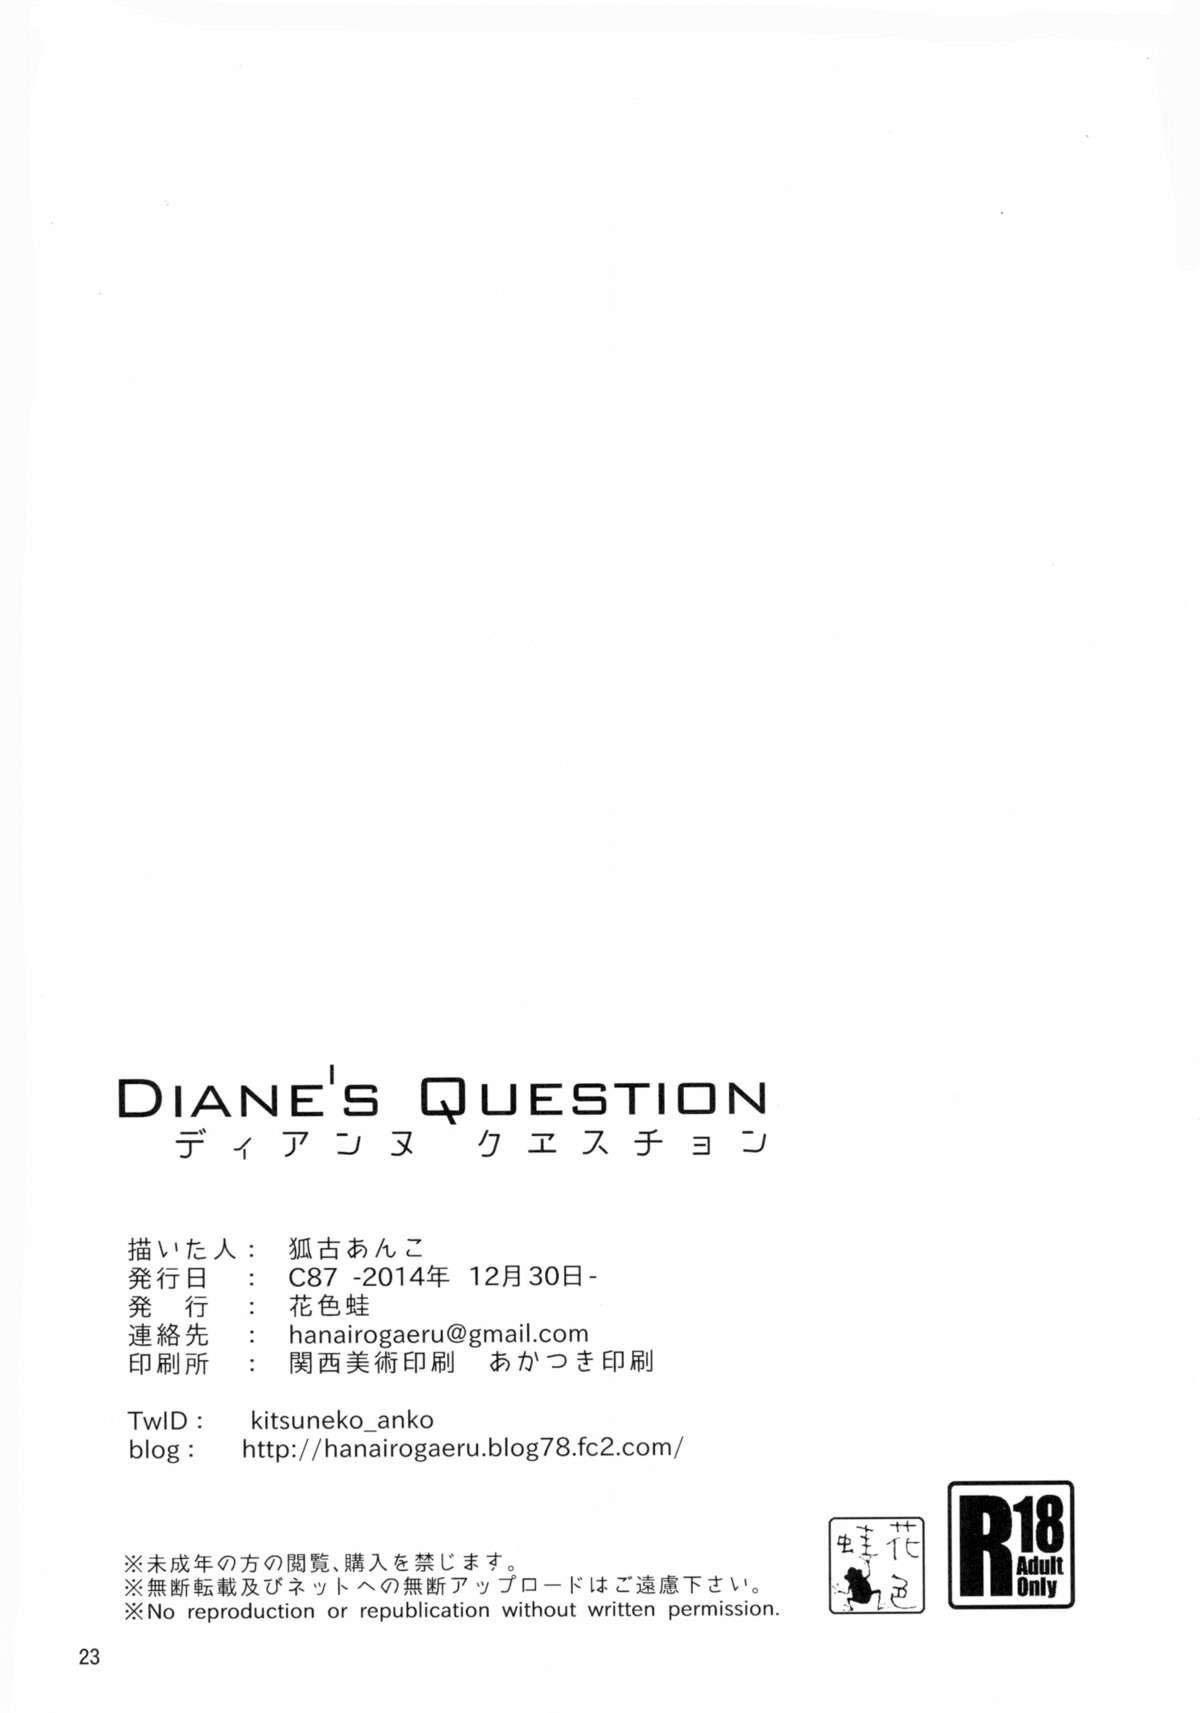 Diane's Question - Foto 22